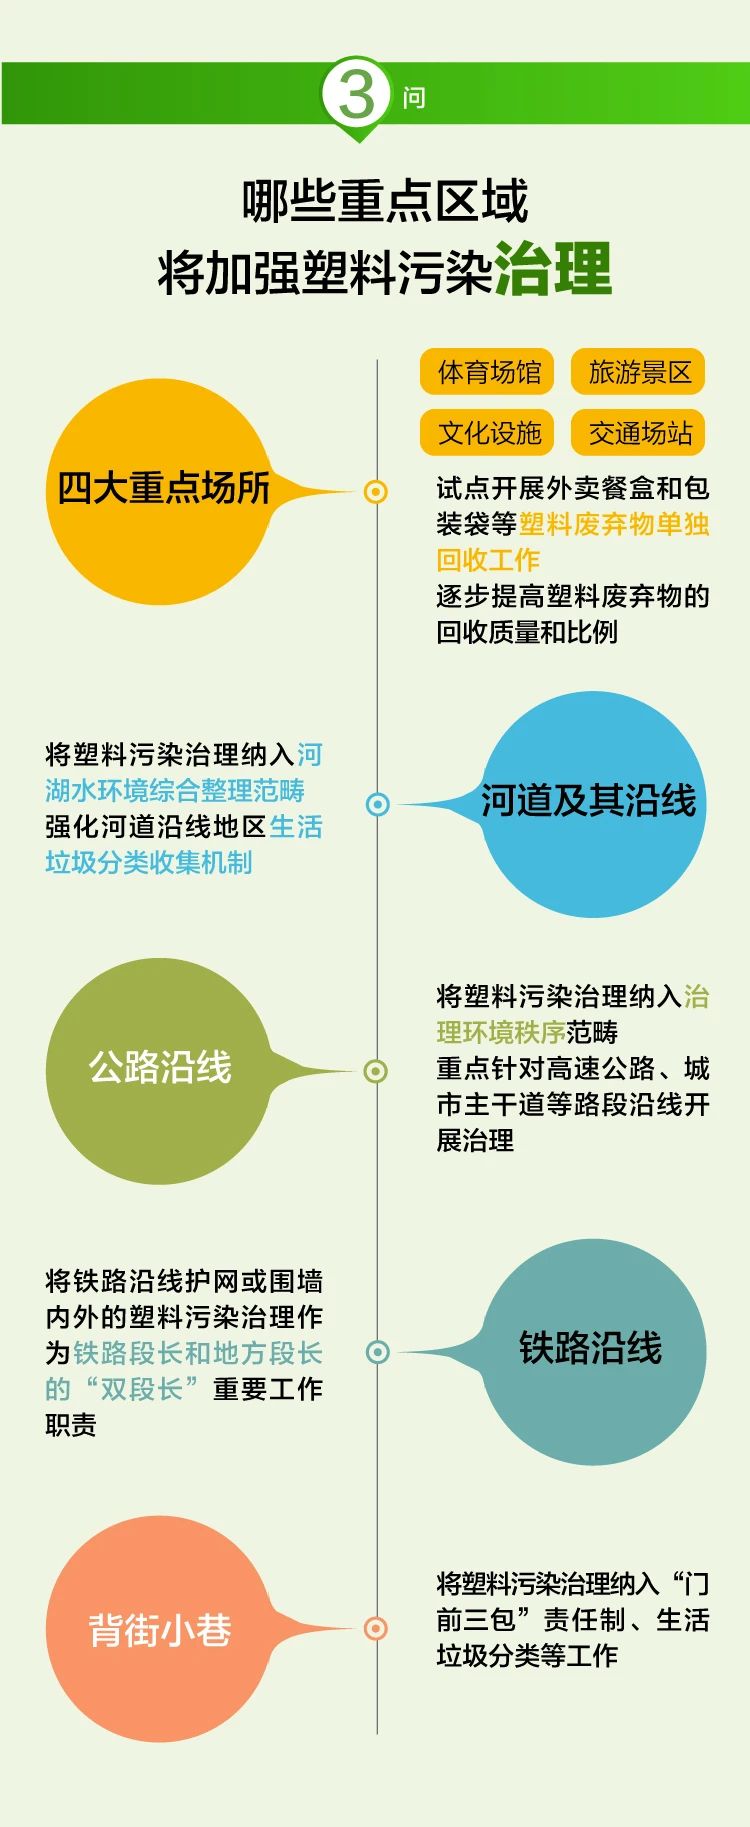 4个问答读懂《北京市塑料污染治理行动计划》